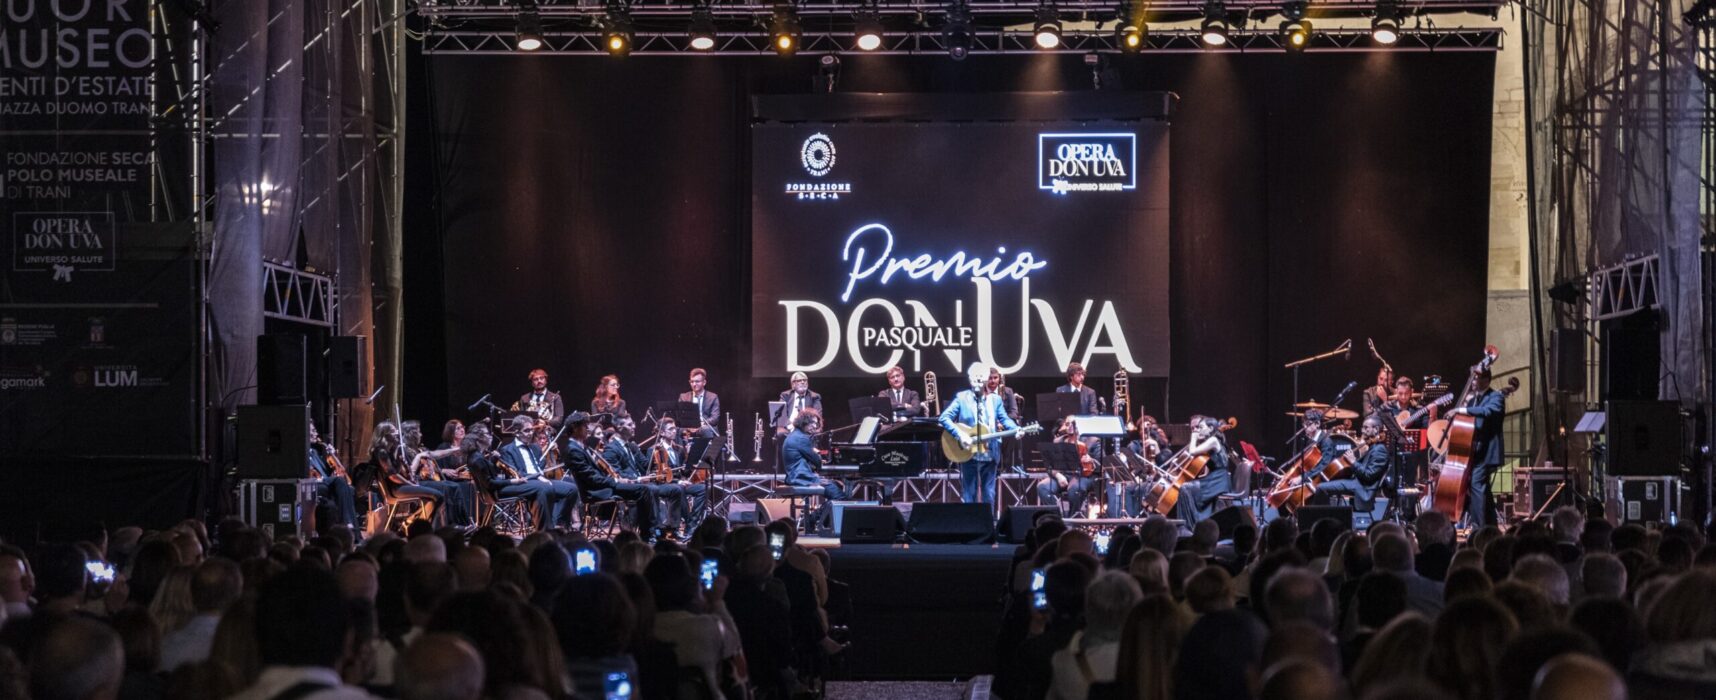 Premio nazionale “Don Uva”, svelati i dettagli della terza edizione dell’evento